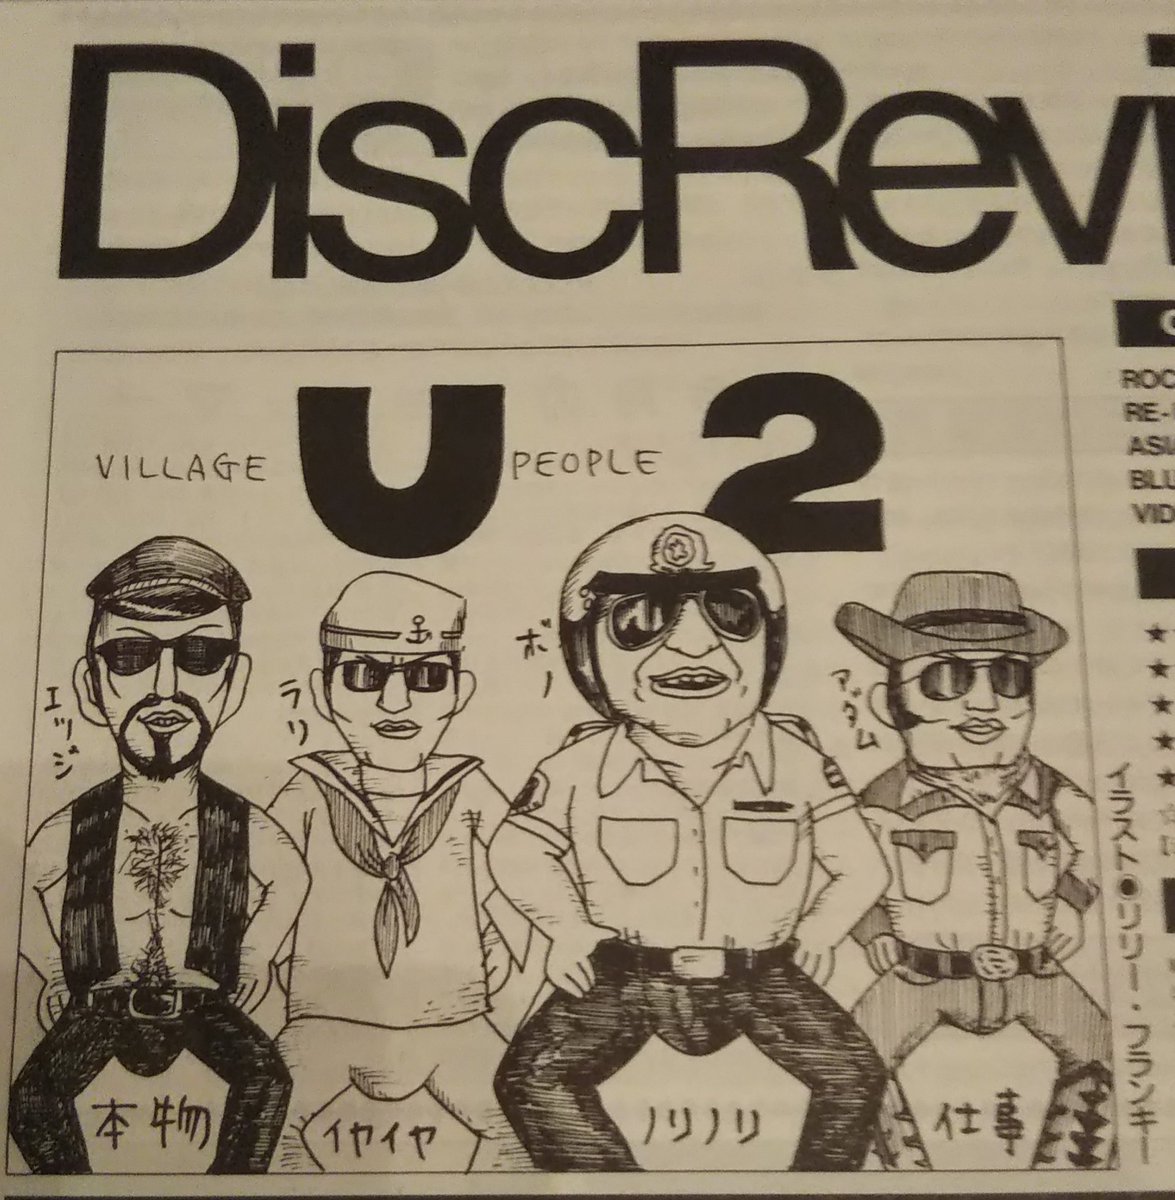 こういち Pop 発売の時 雑誌 クロスビート に掲載されていたイラスト 今や 名バイプレイヤーのリリーフランキー先生作 それぞれの個性が的確に描かれている 流石 U2 クロスビート